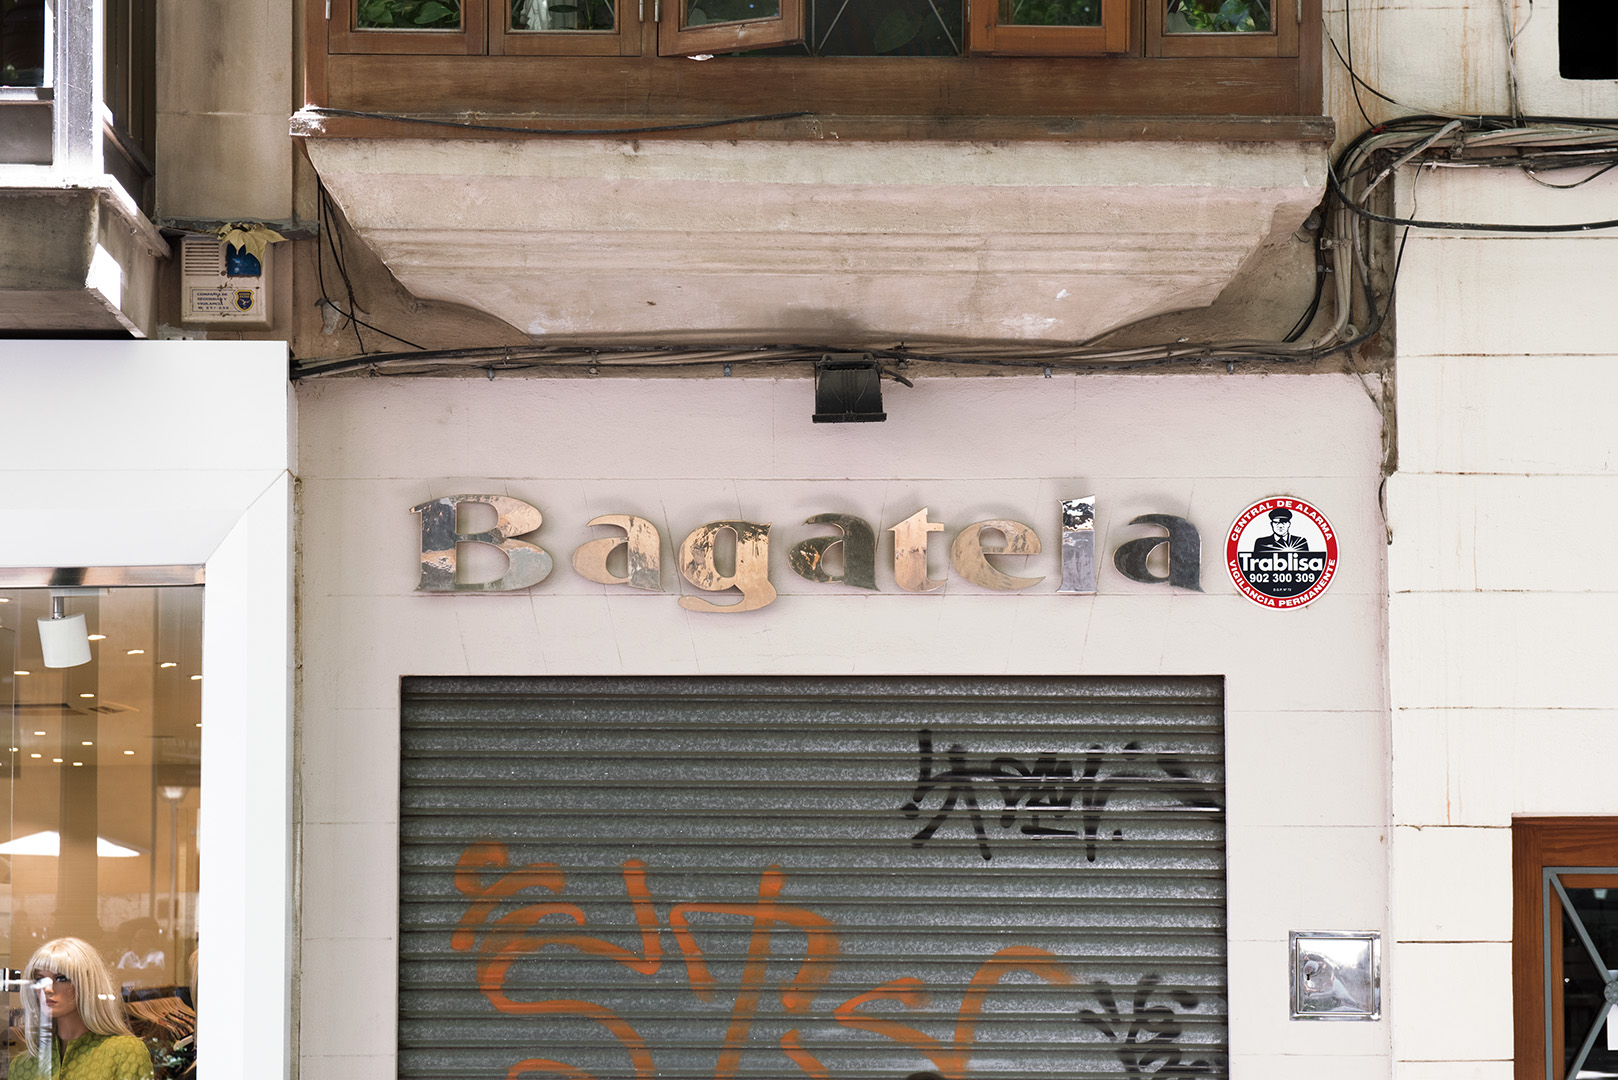 Werbefotografie Studio OberfrankenStreet Aufnahme mit Reklameschrift "Bagatela" in Italien. Feigfotodesign